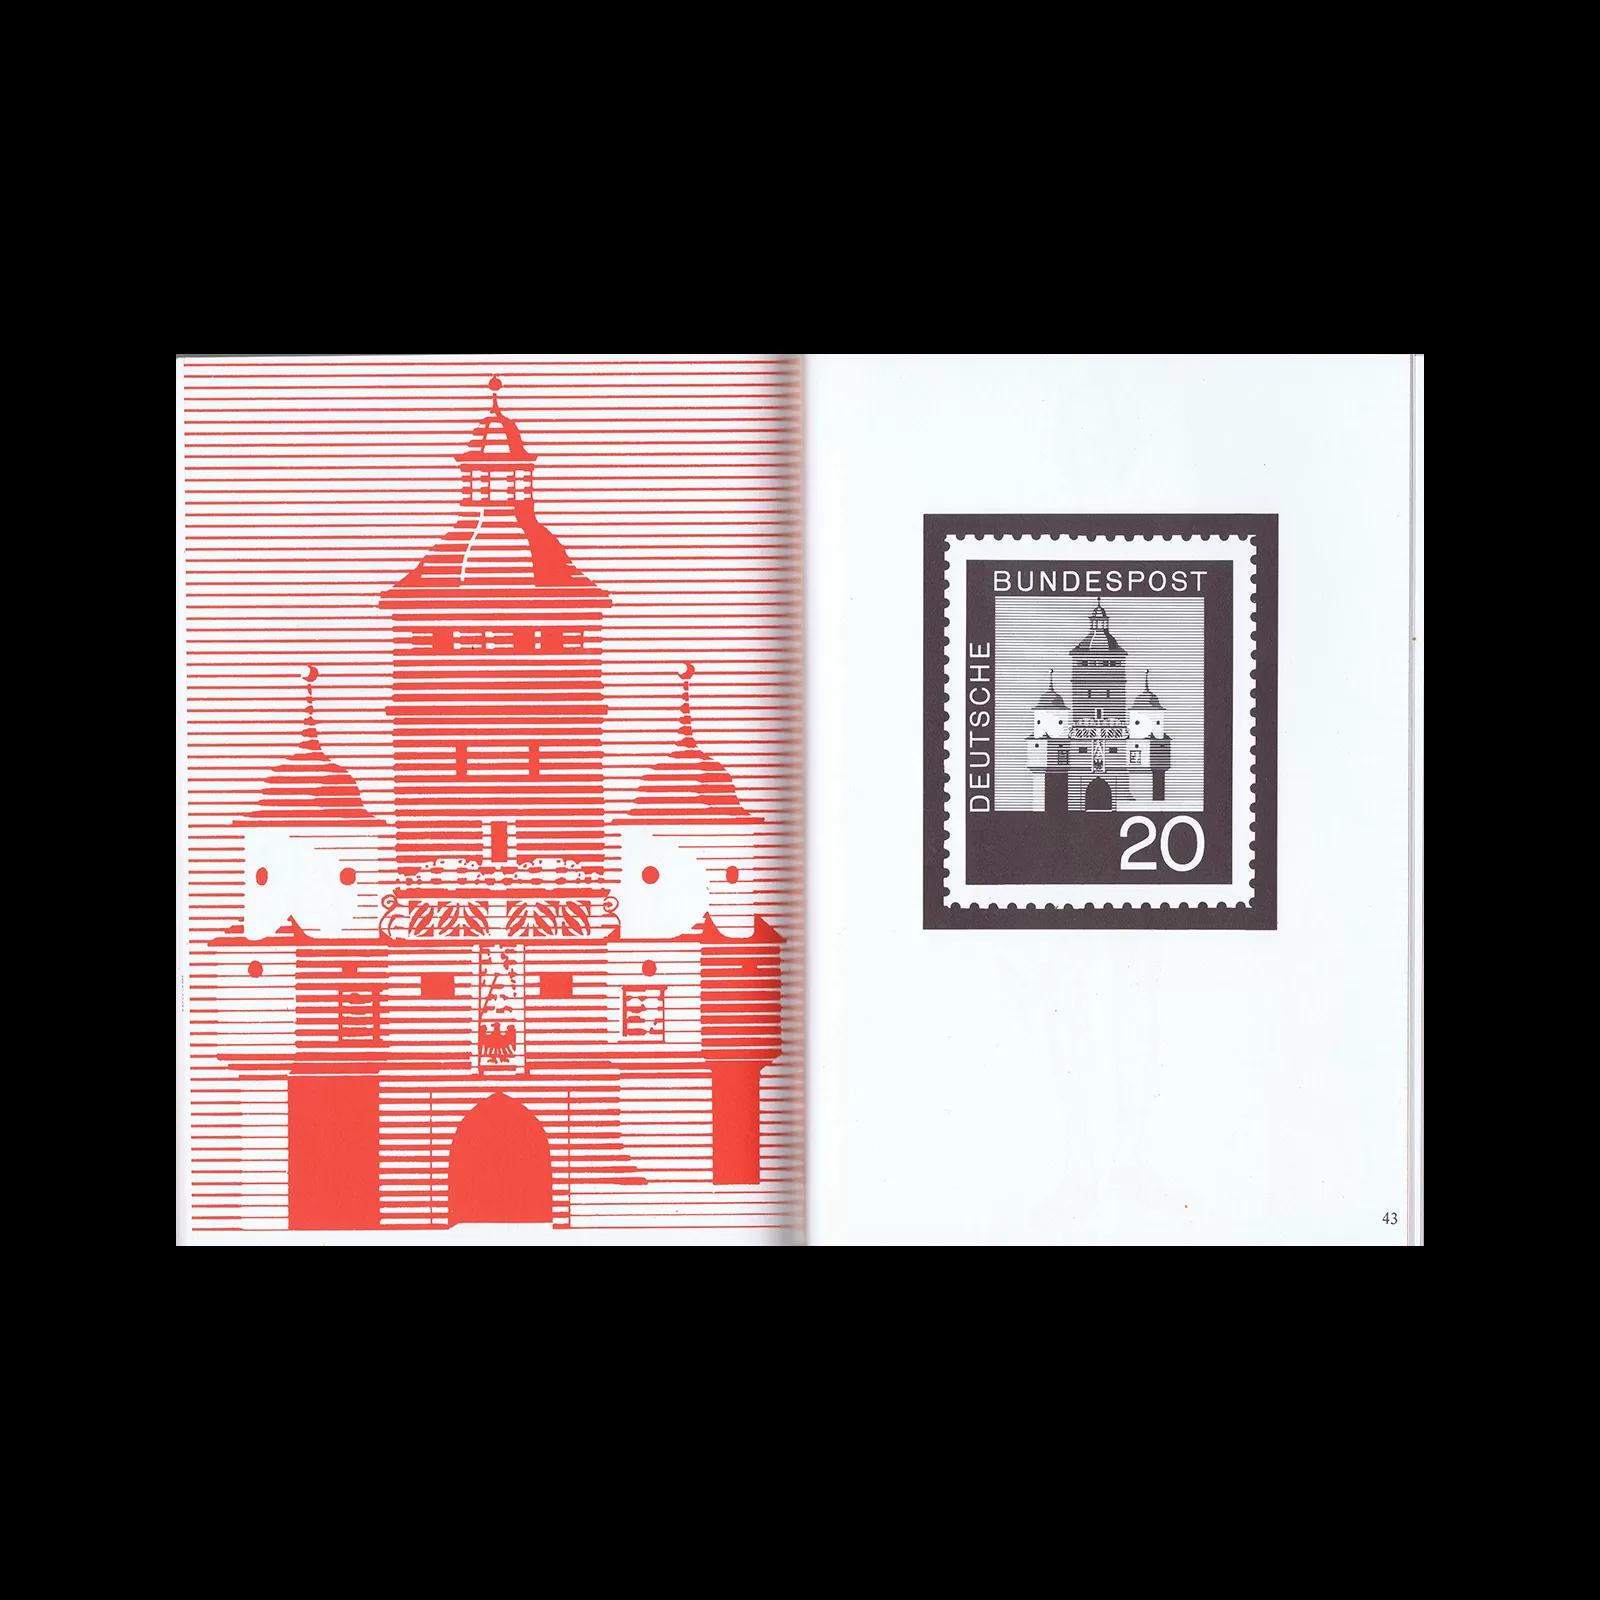 Karl Oskar Blase, Briefmarken-Design, Verlag für Philatelistische Literatur, 1981